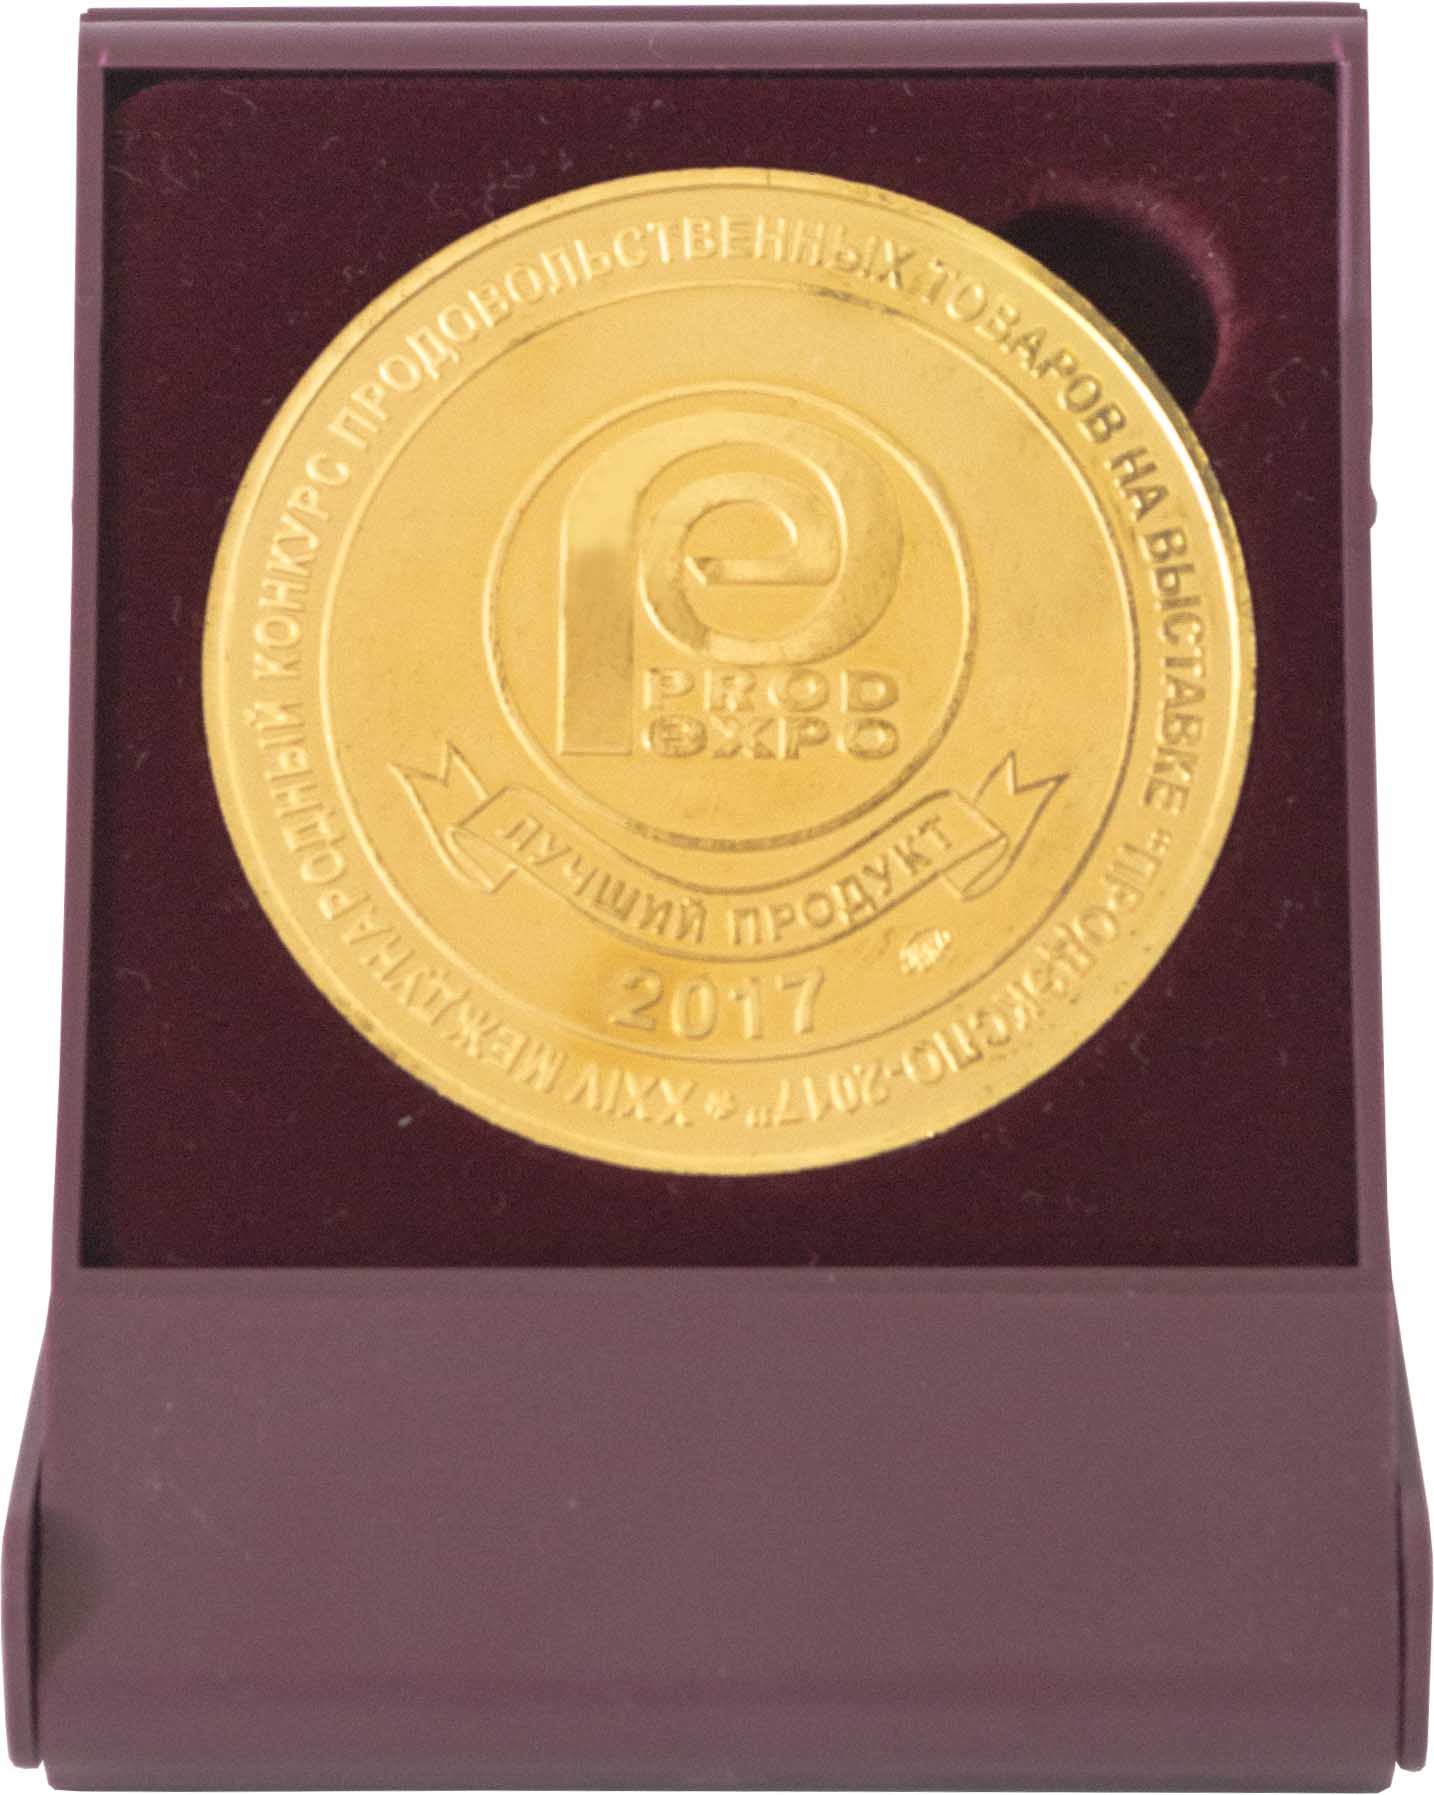 Лучший продукт ПРОД ЭКСПО 2017 - Золотая медаль в Футляре